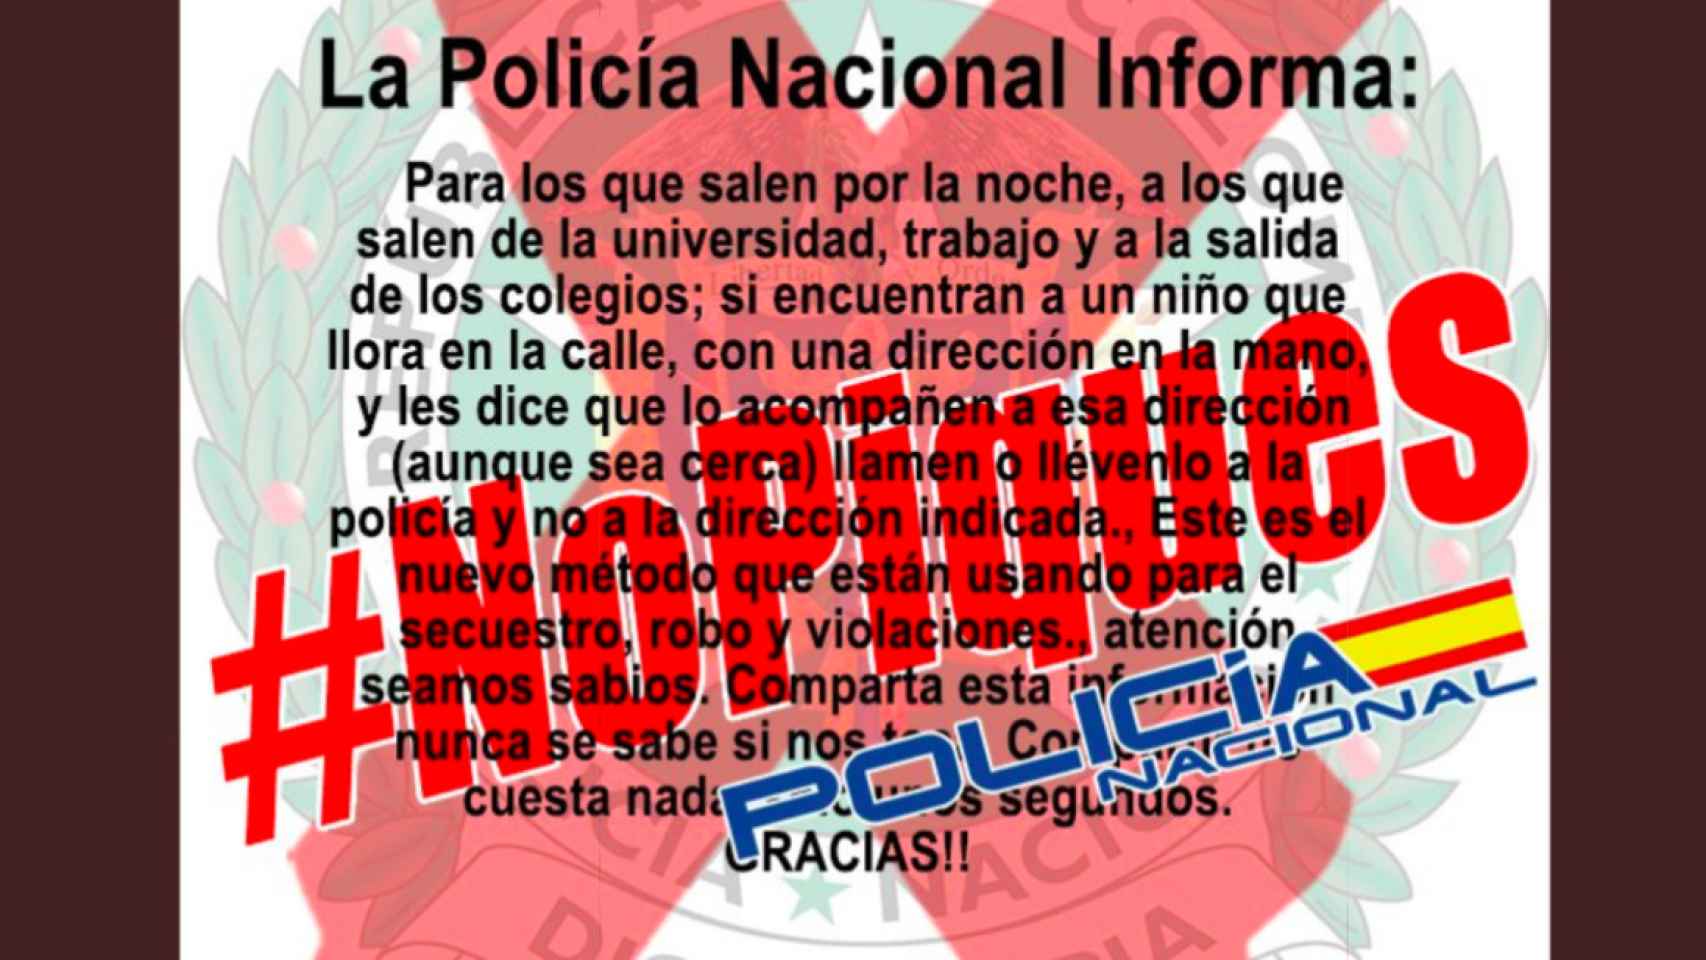 La Policía Nacional avisa sobre el bulo difundido por redes sociales / TWITTER